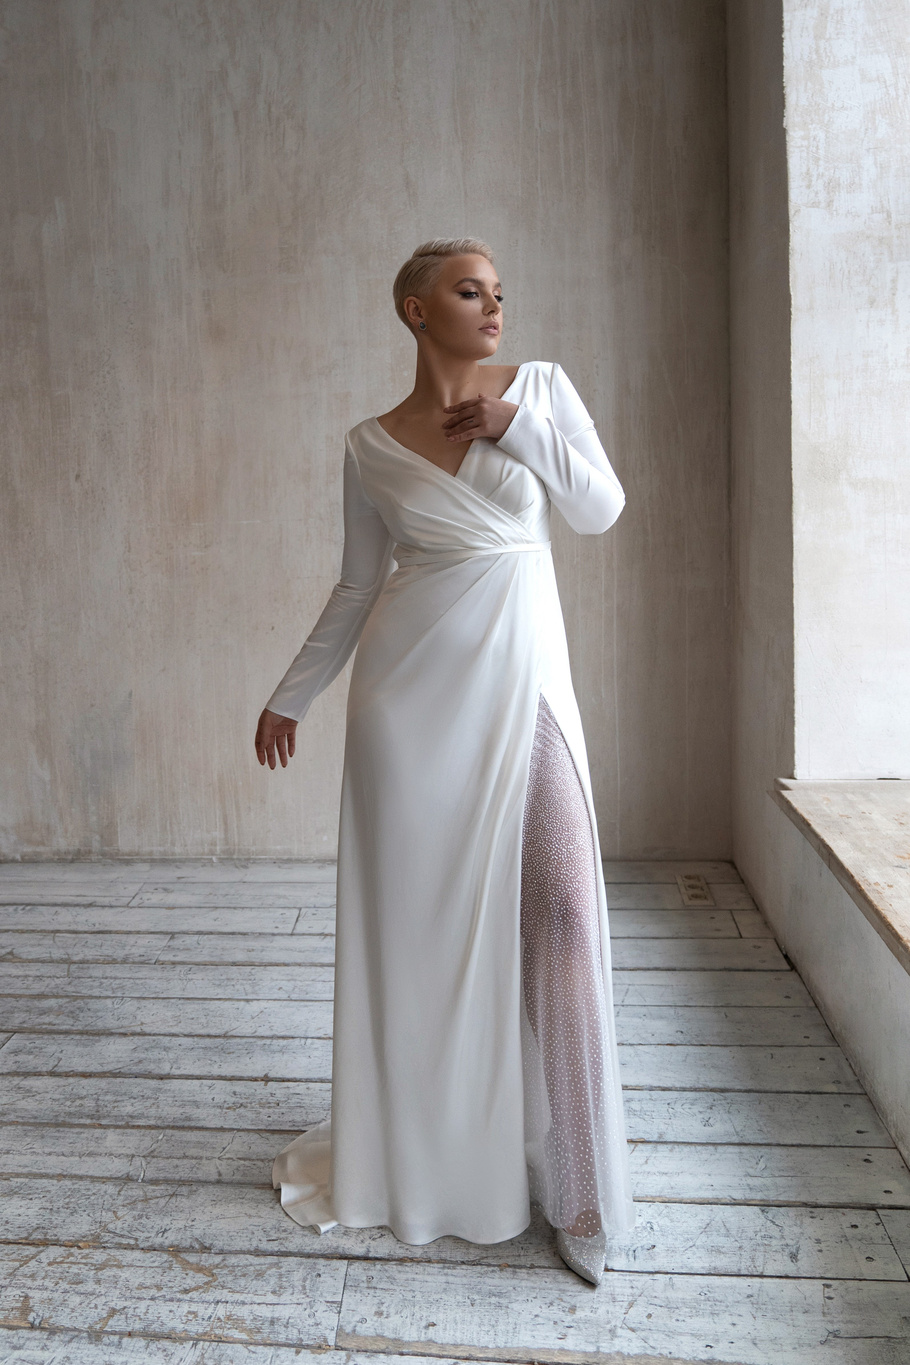 Свадебное платье «Оруэл плюс сайз» Марта — купить в Нижнем Новгороде платье Оруэл из коллекции 2021 года